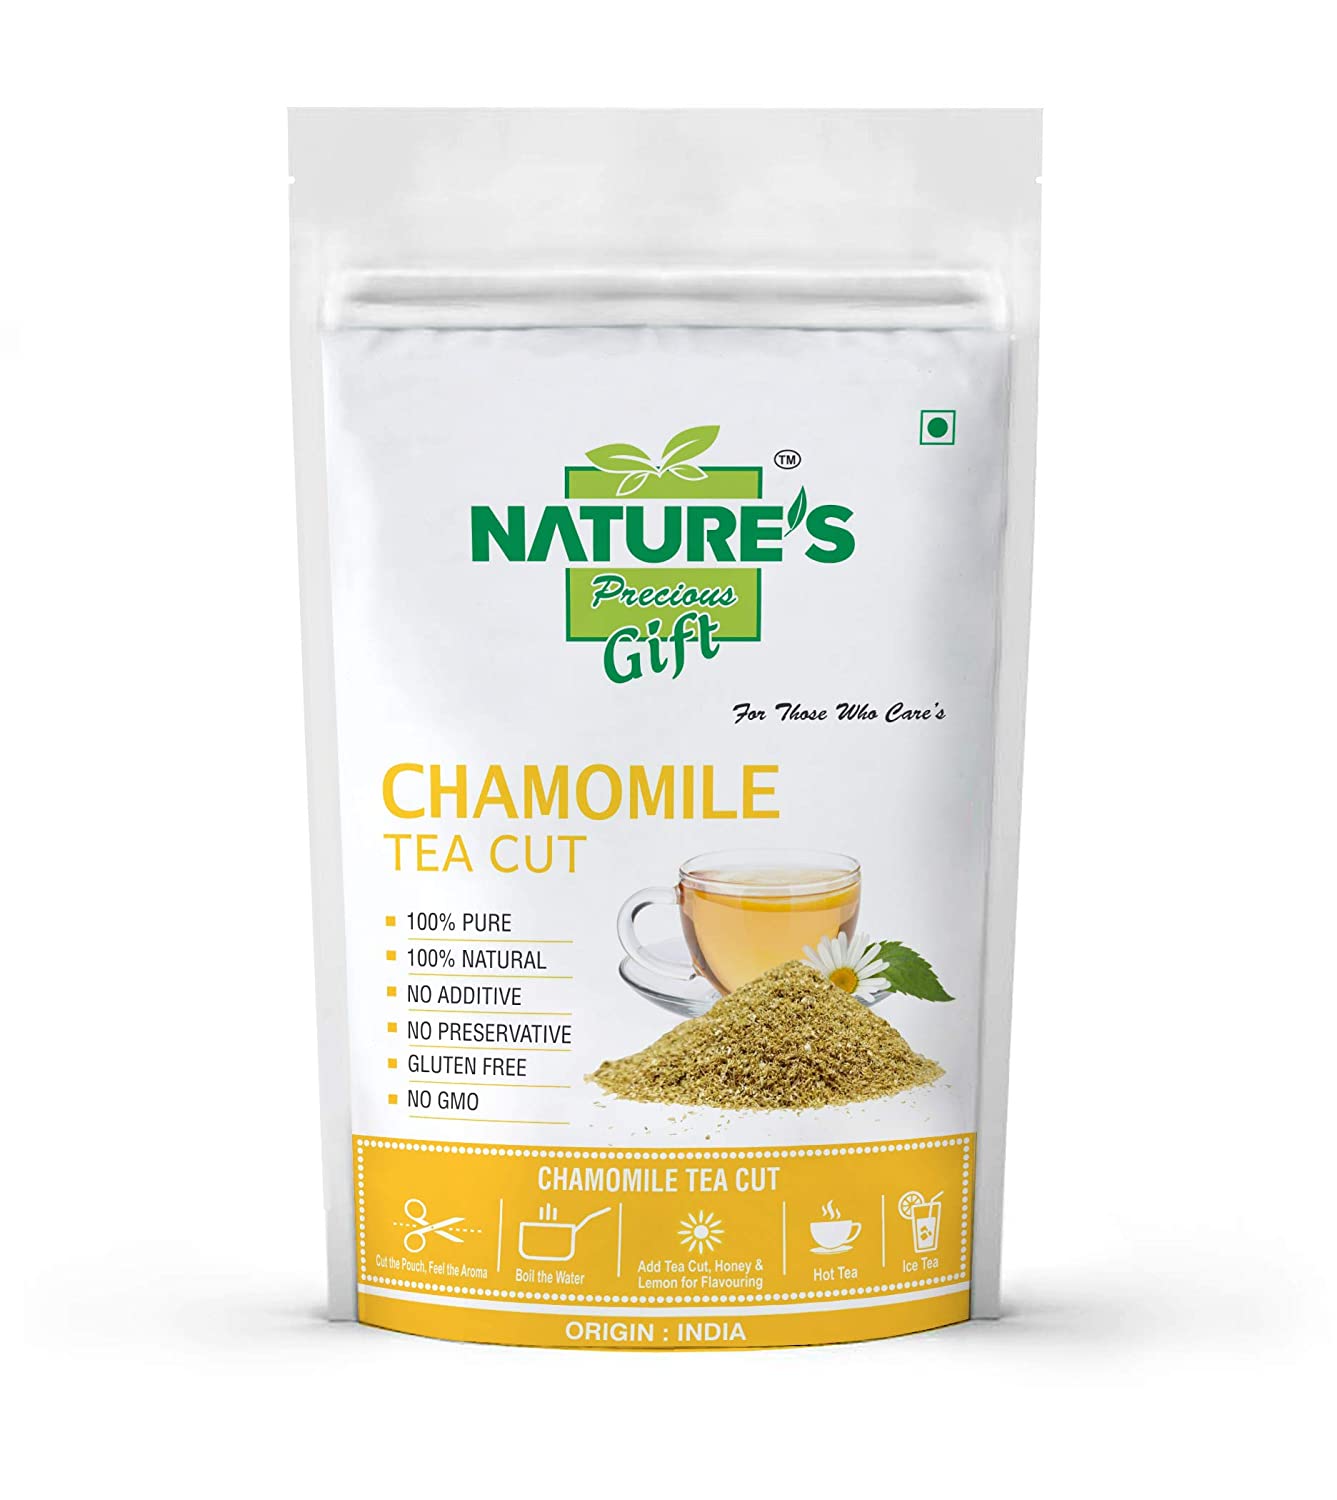 Nature's Gift Chamomile Tea Cut Image